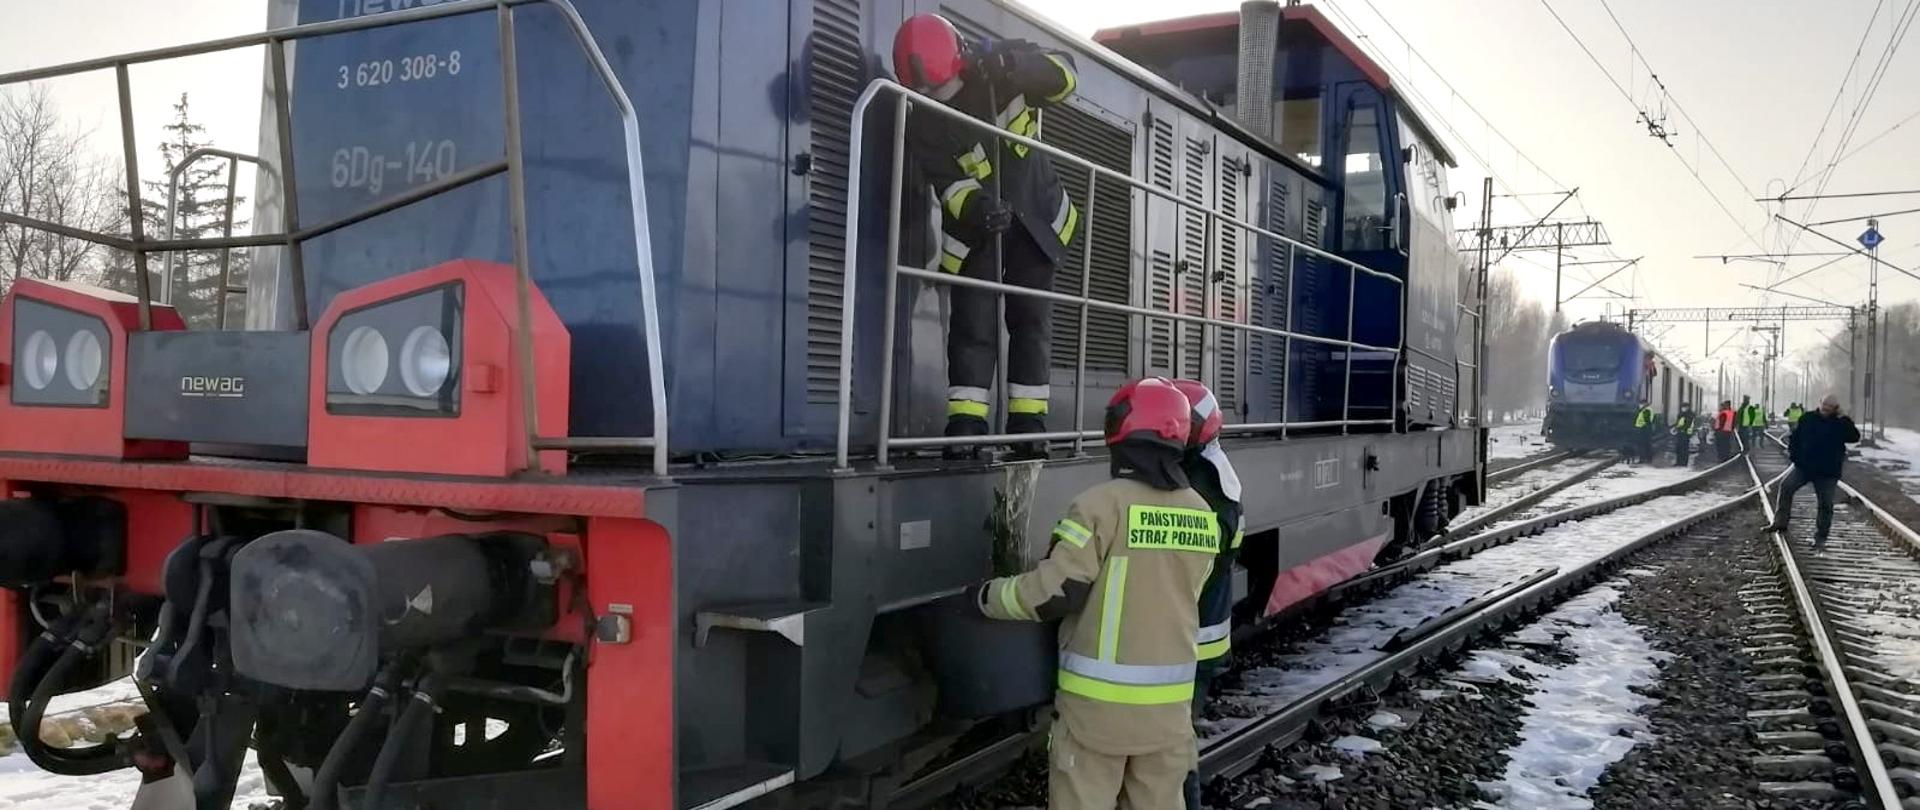 Na zdjęciu lokomotywa spalinowa. Obok lokomotywy oraz na pojeździe strażacy usuwają wyciekający olej napędowy. W tle, za lokomotywą stoi pociąg pasażerski.